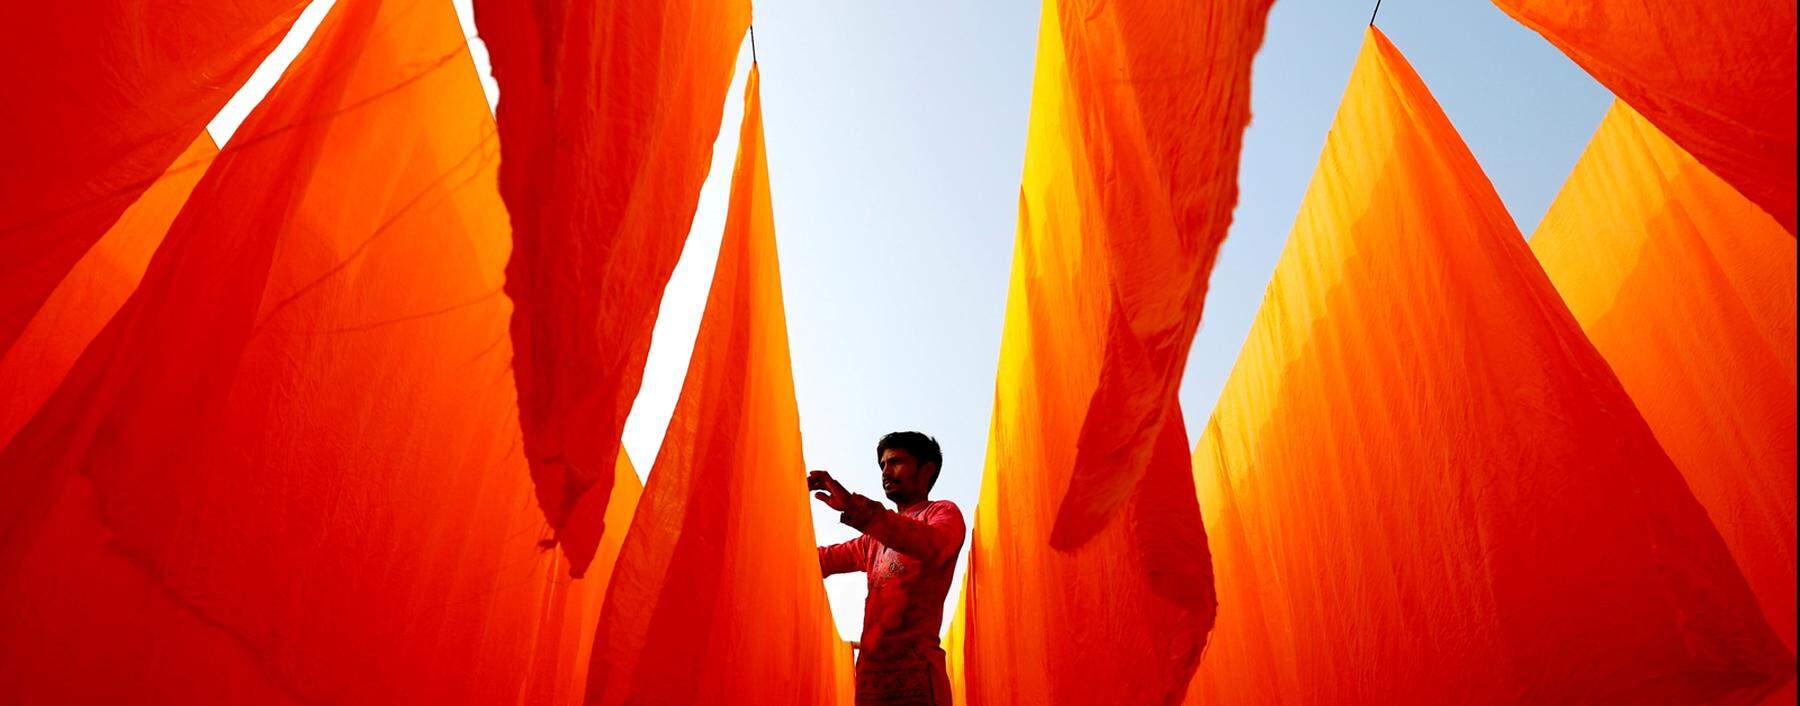 Ein Textilarbeiter in Bangladesch hängt Stoffe zum Trocknen auf, nachdem diese eingefärbt wurden.